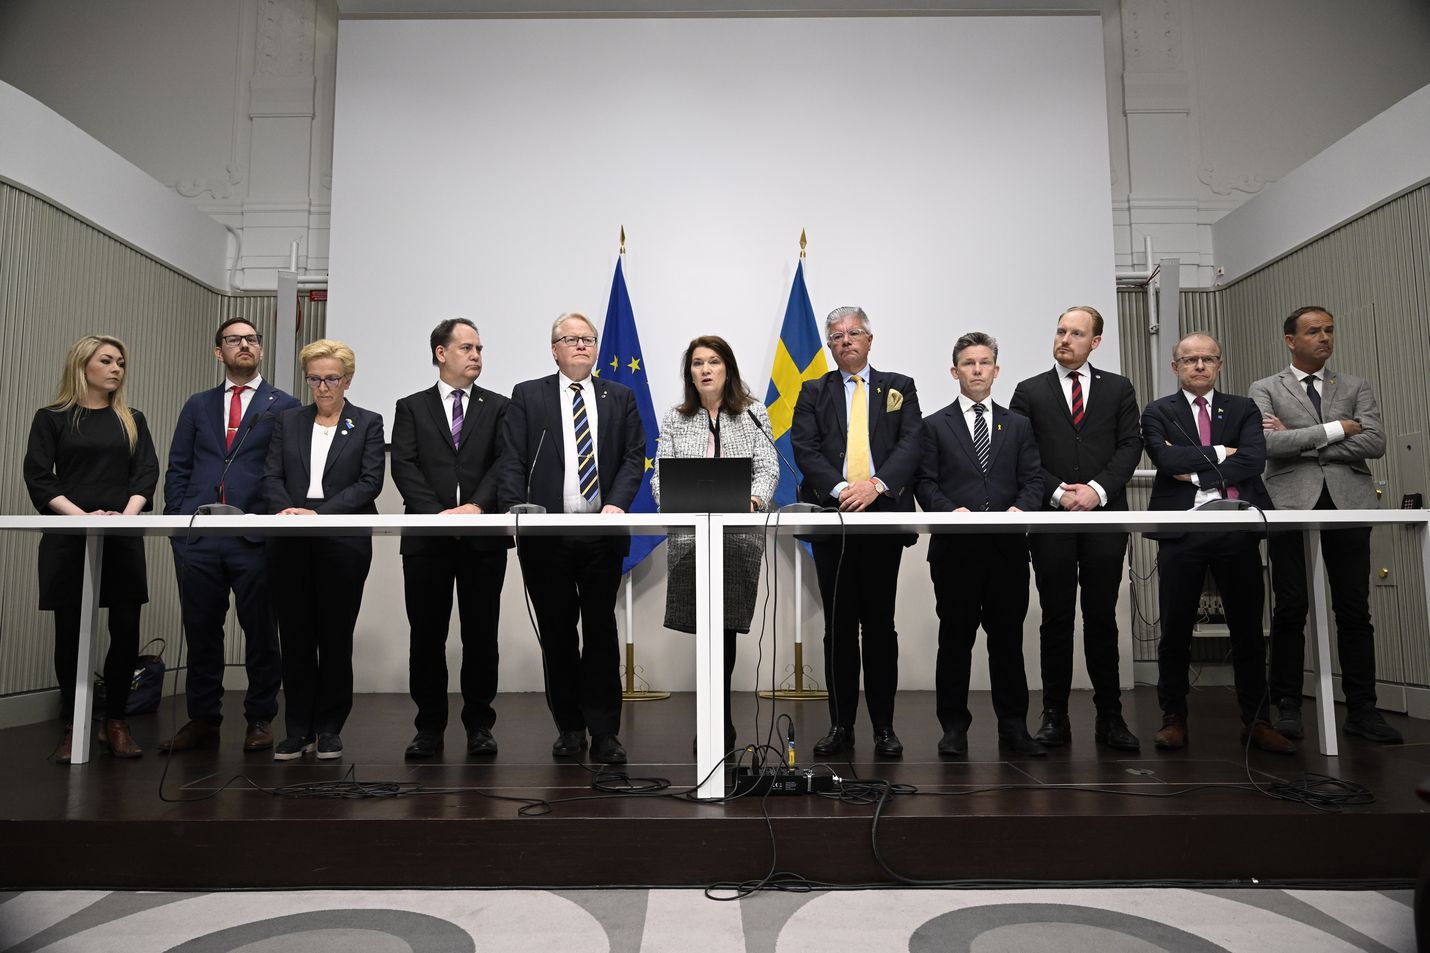 Kahdeksan ruotsalaista valtiopäiväpuoluetta esitteli turvallisuutta ja Natoa käsittelevän selonteon Tukholmassa perjantaina.